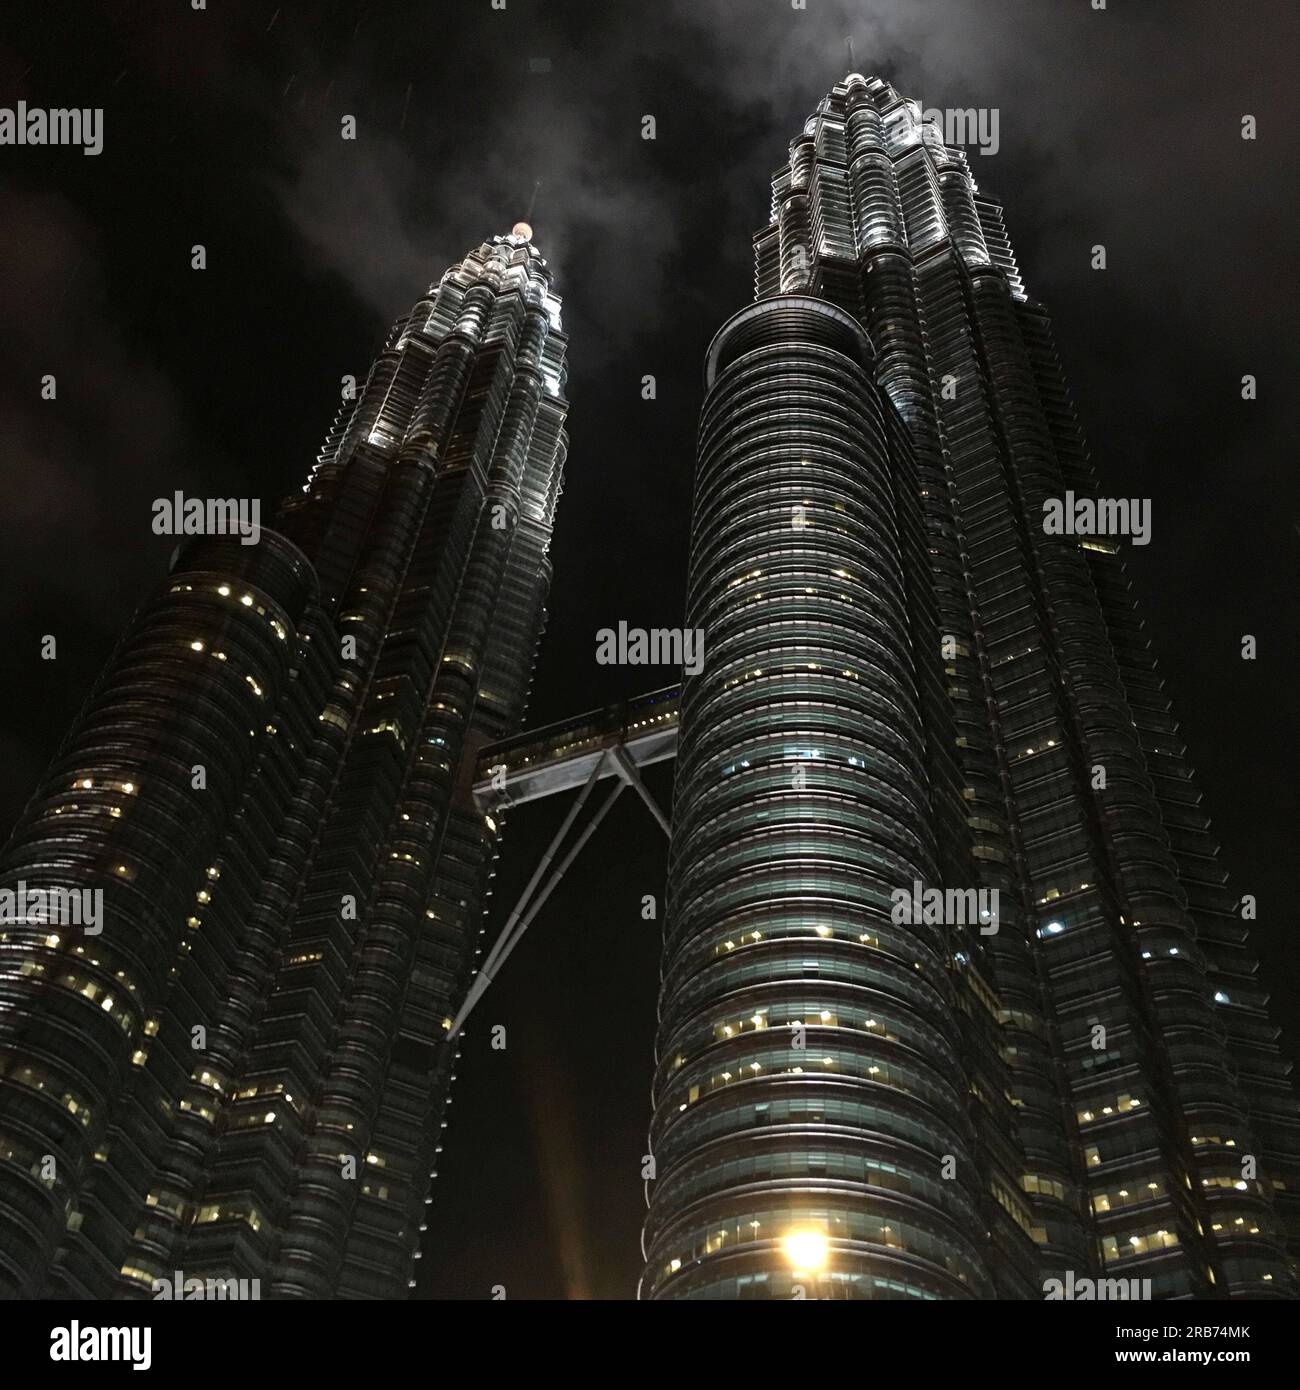 Petronas twin tower Kuala Lumpur, Malaysia / Torres gemelas Petronas Kuala Lumpur, Malasia / 马来西亚国家石油公司双子塔 吉隆坡 Stock Photo